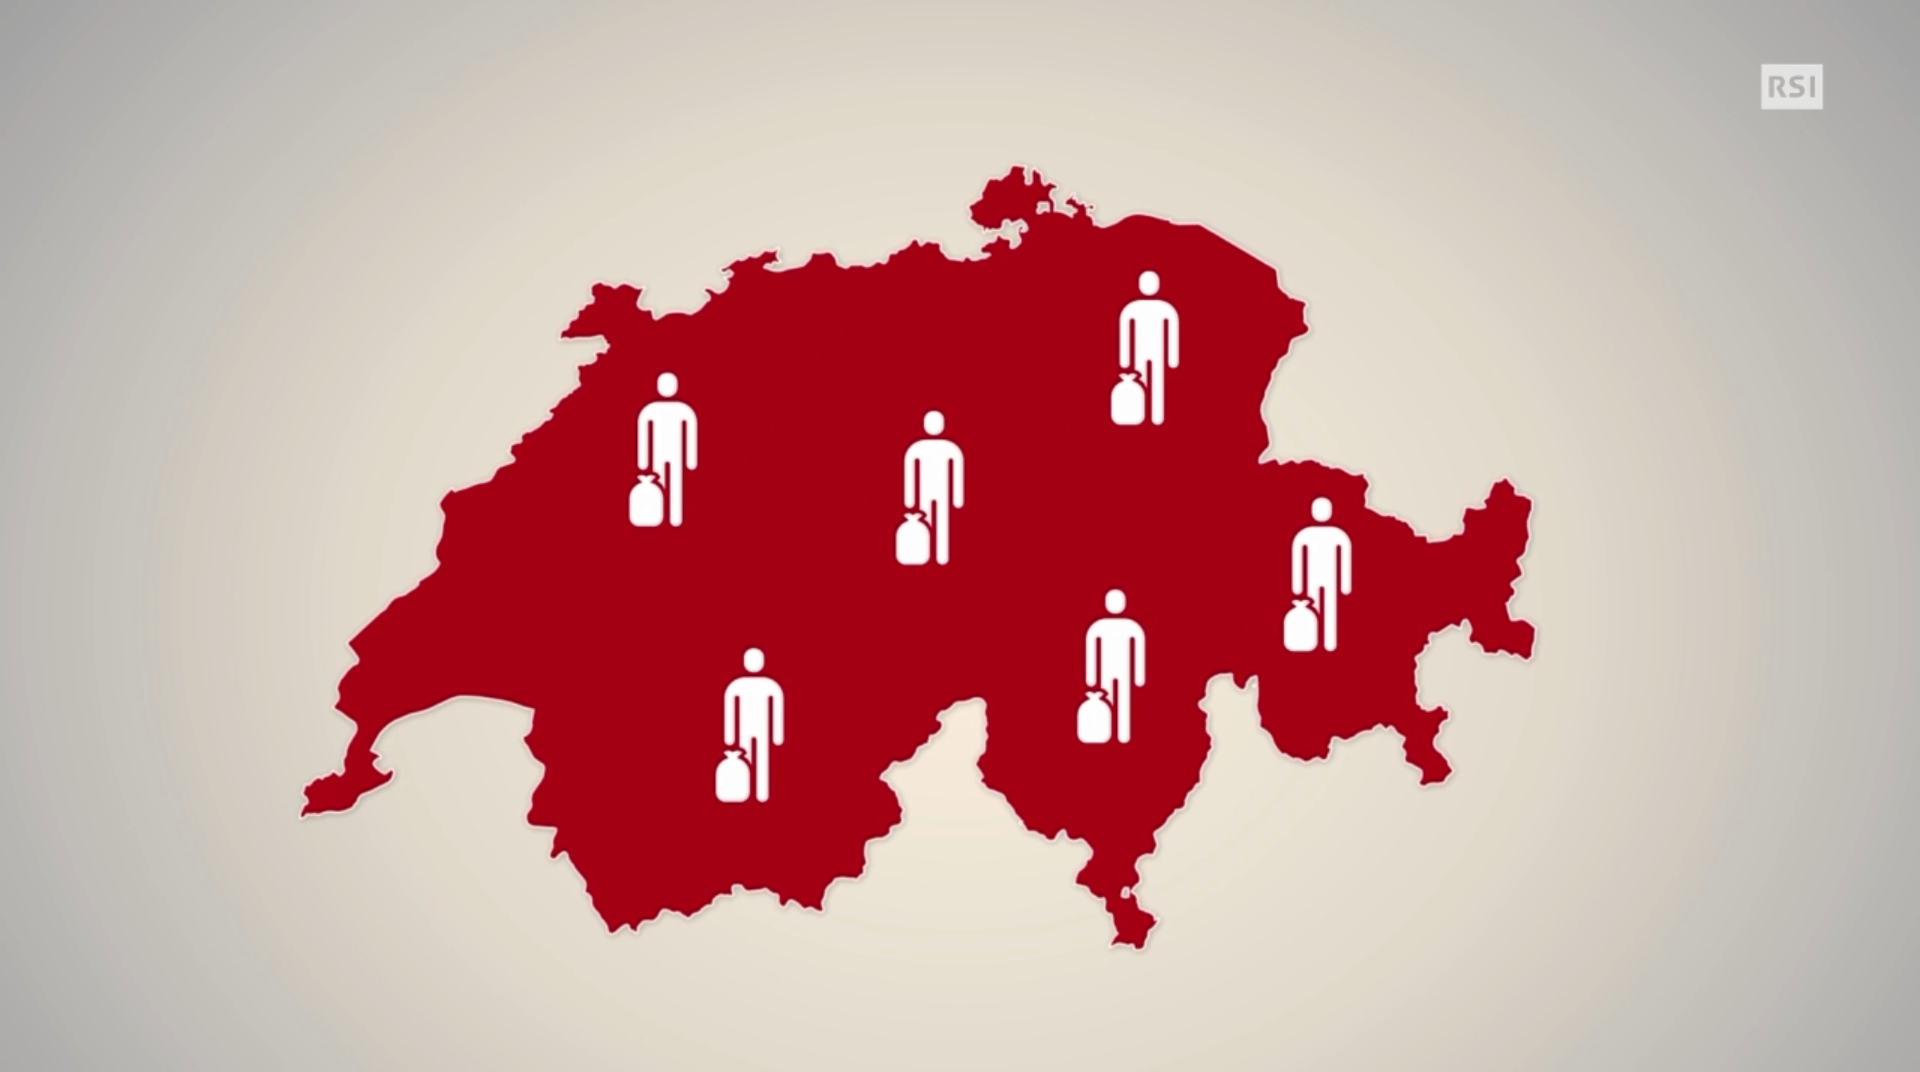 In un grafico, la silhouette della Svizzera e i 5 pittogrammi raffiguranti i migranti distribuiti per tutto il Paese.